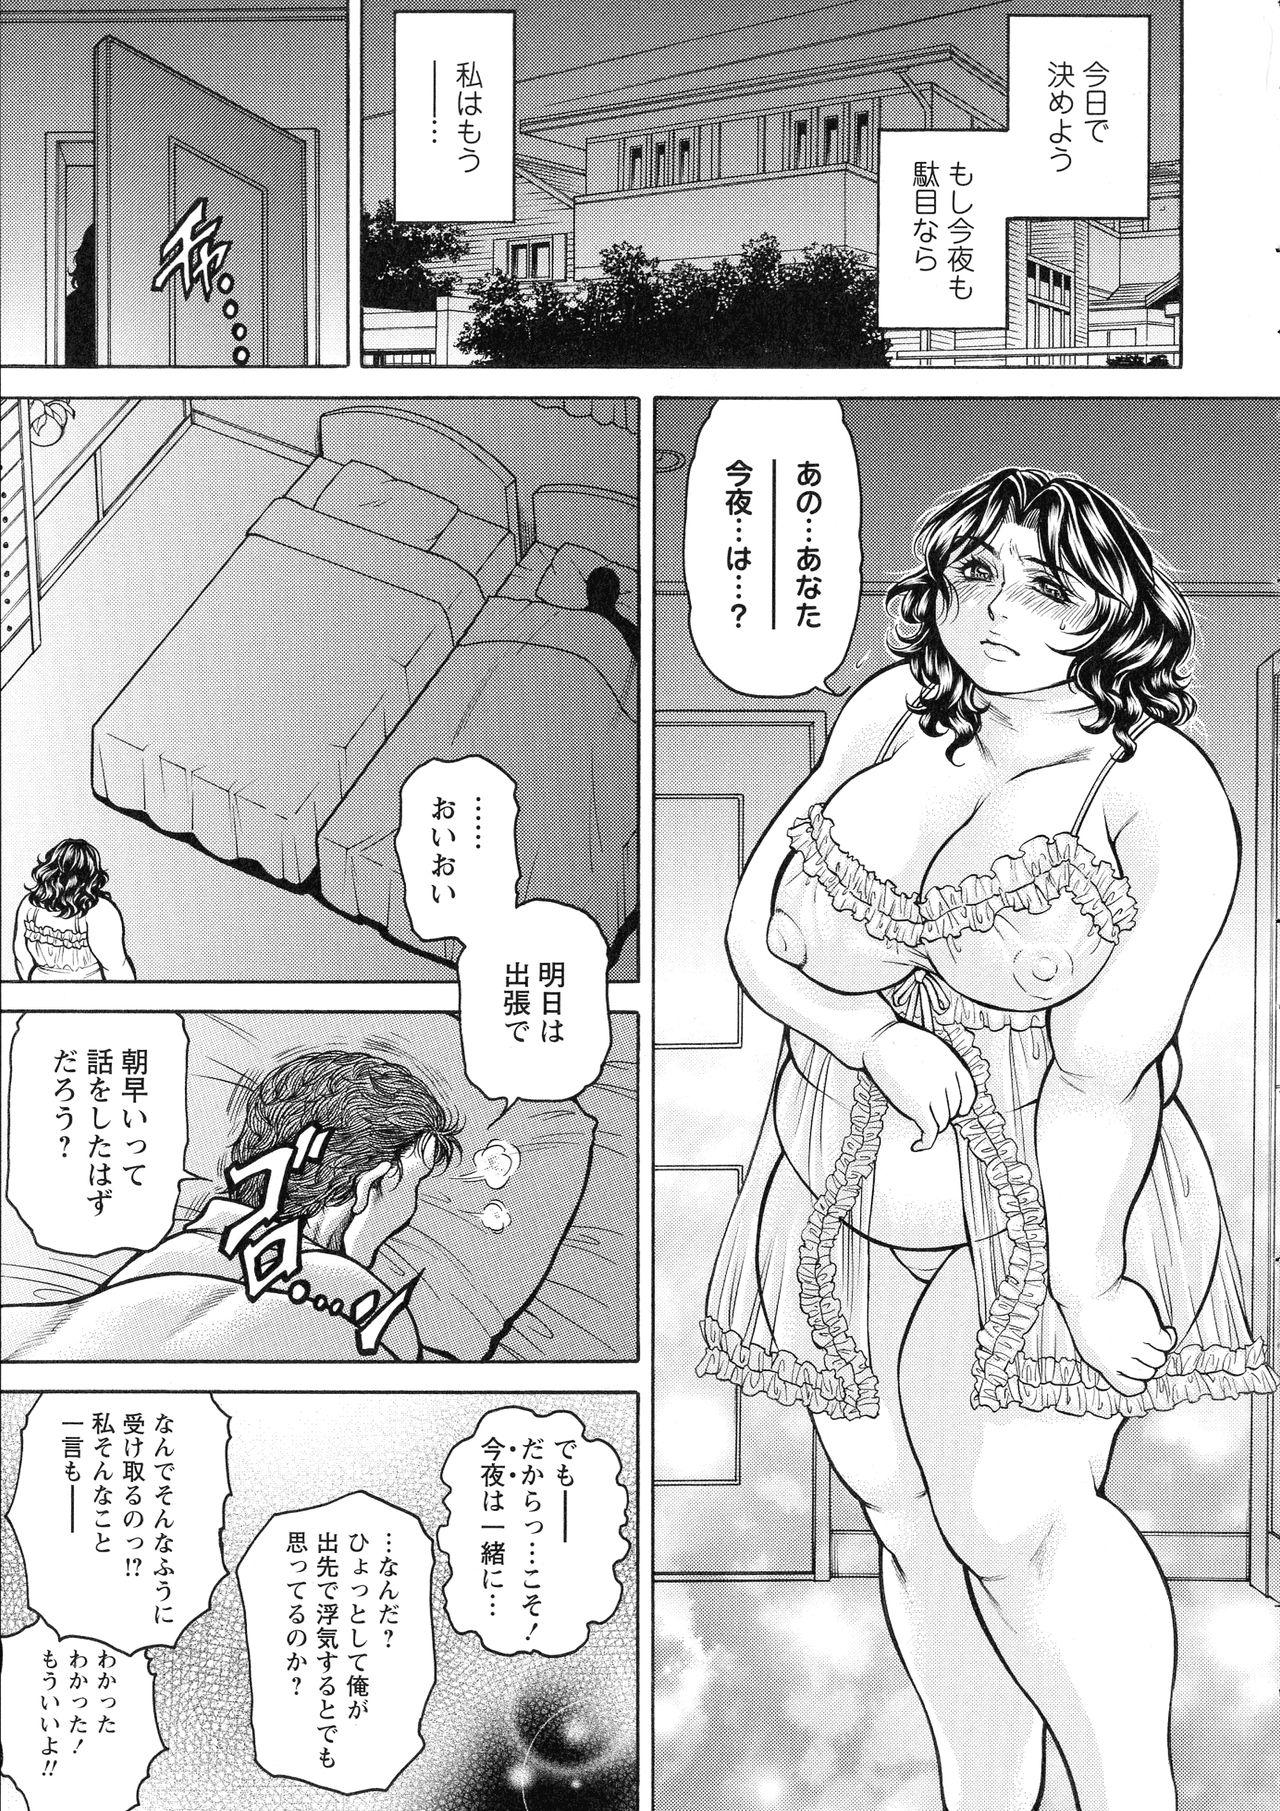 [Hino Toshiyuki] Zetsubou Heroine Mugen Jigoku -- Despair Heroine in Infinite Sex Hell 184